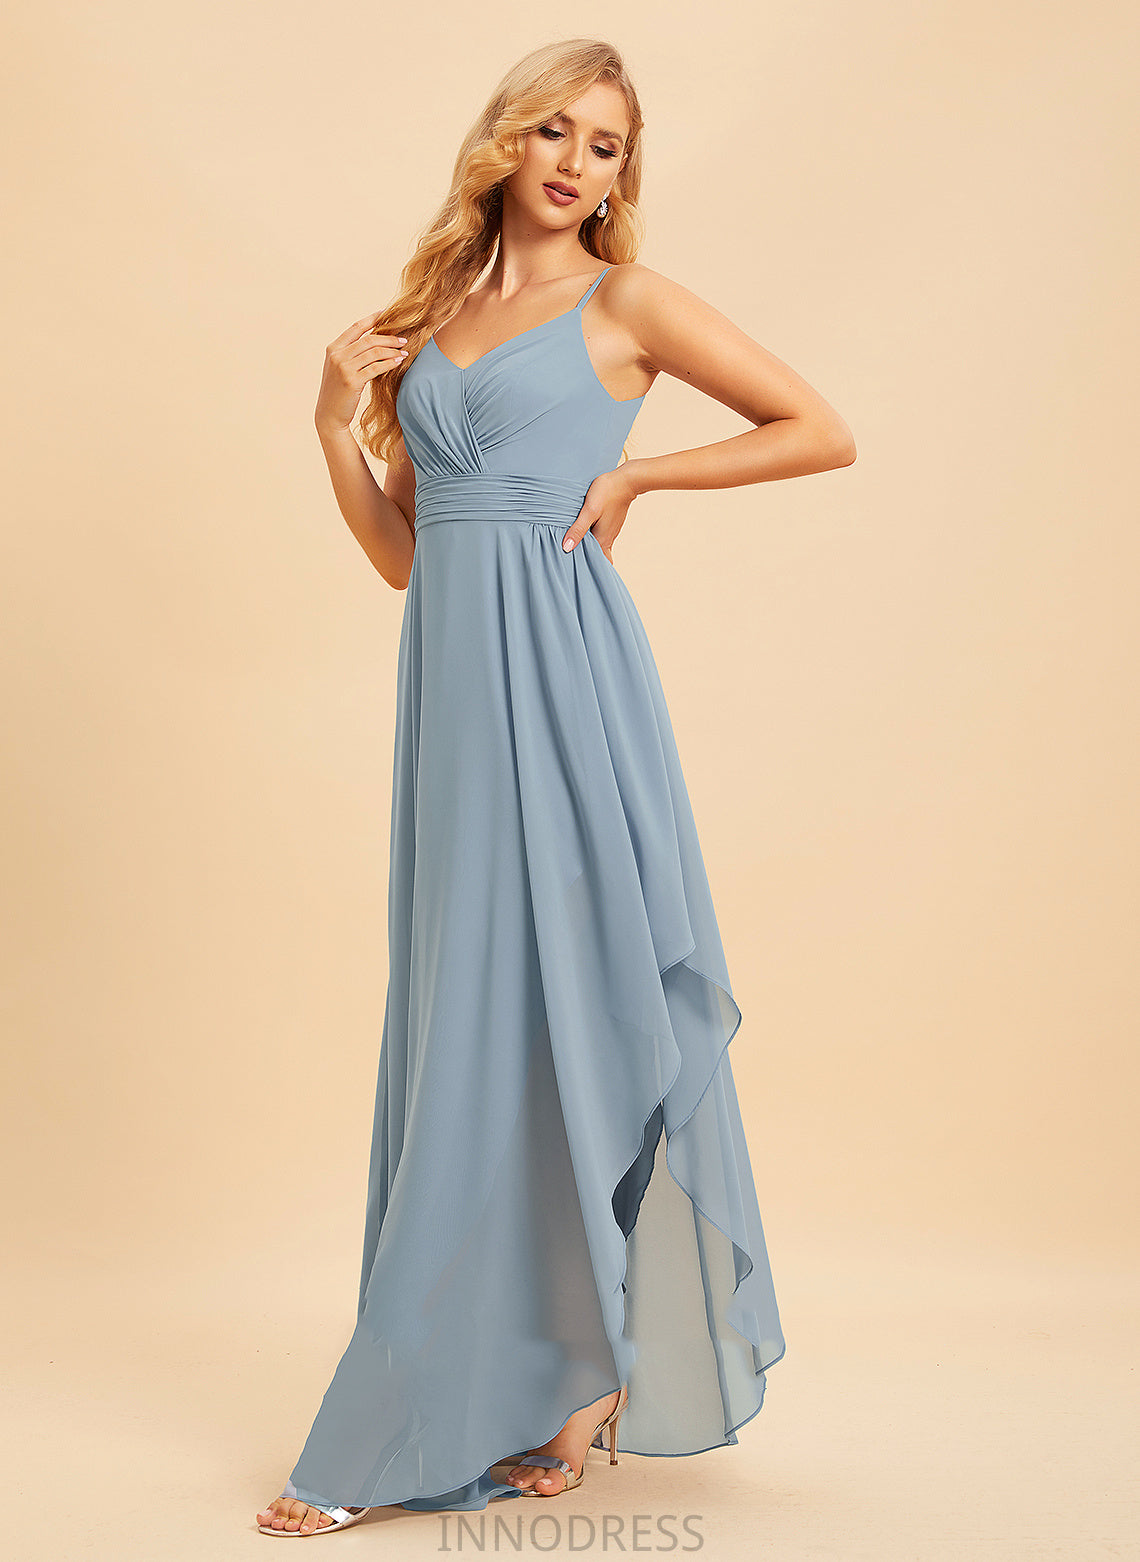 A-Line Ruffle Fabric Silhouette V-neck Length Neckline Embellishment Asymmetrical Renee A-Line/Princess Floor Length Bridesmaid Dresses